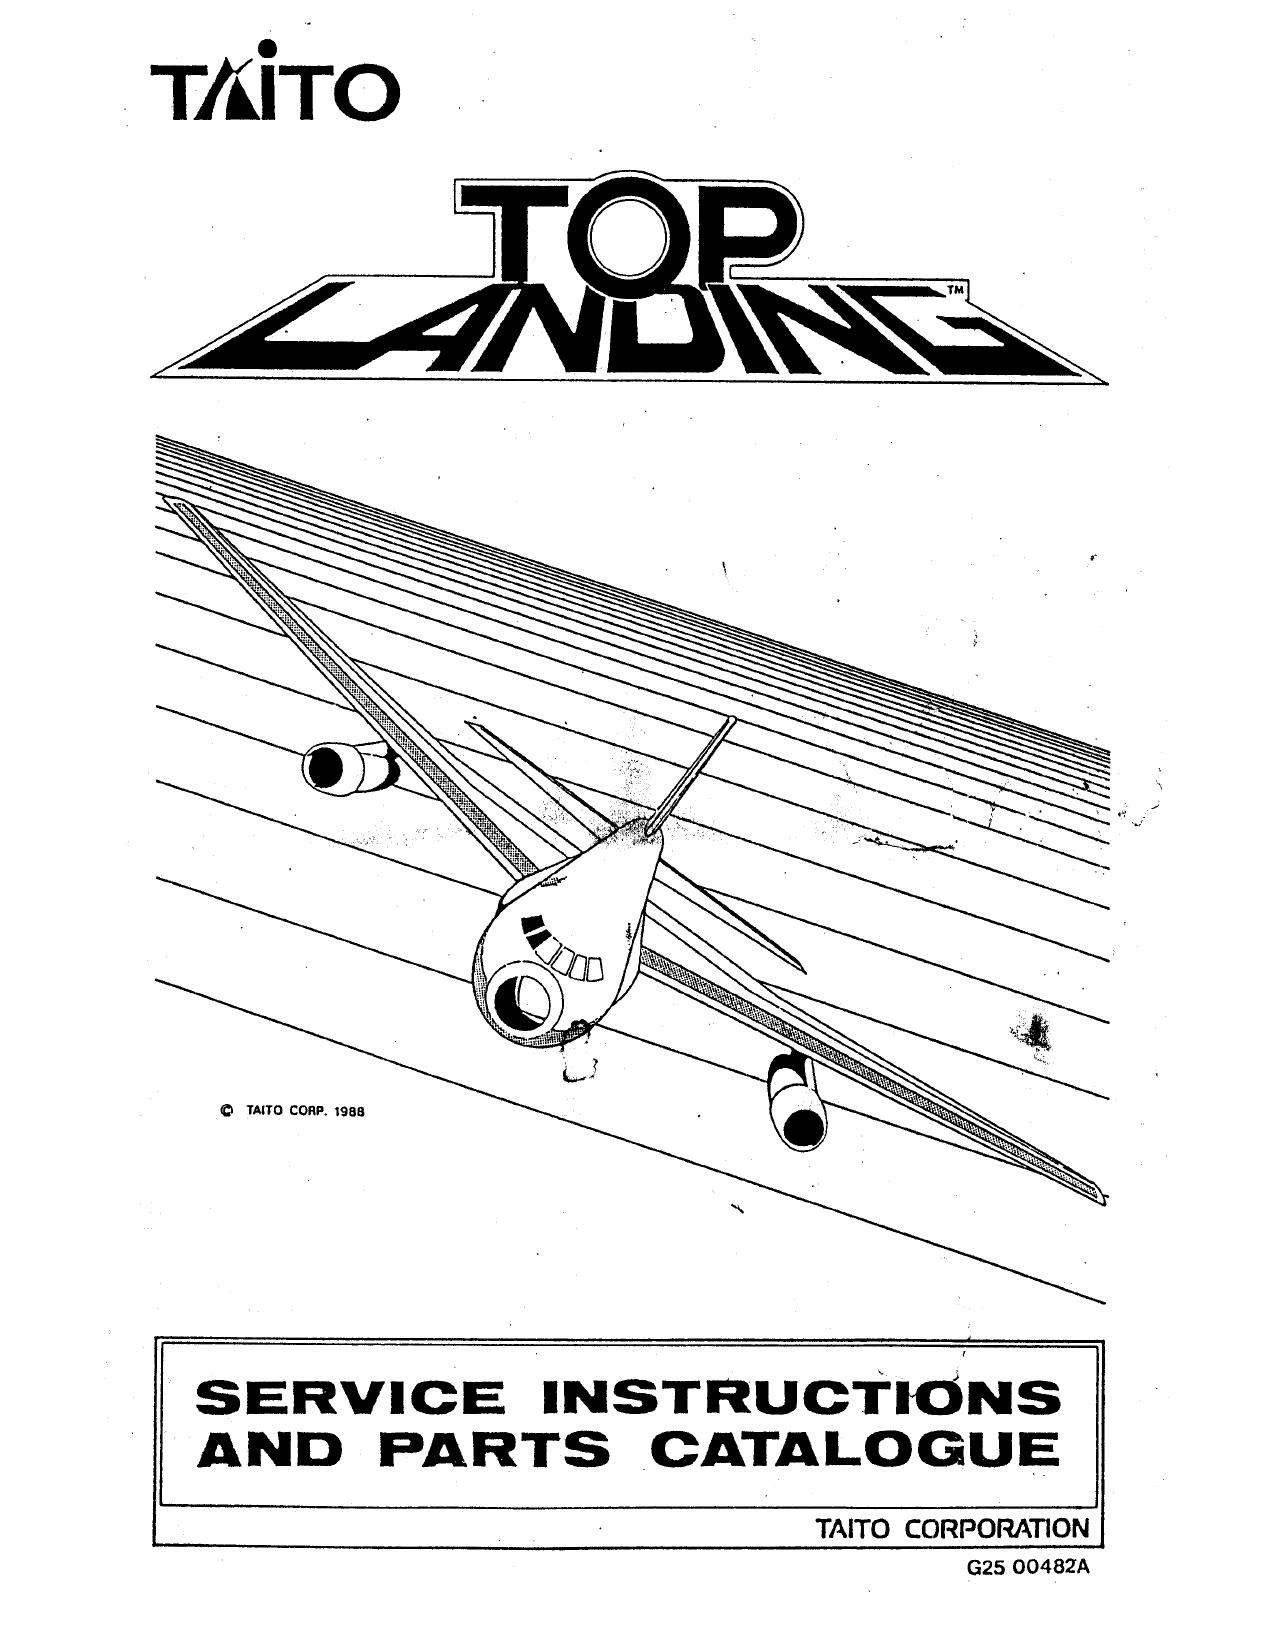 TopLanding Manual